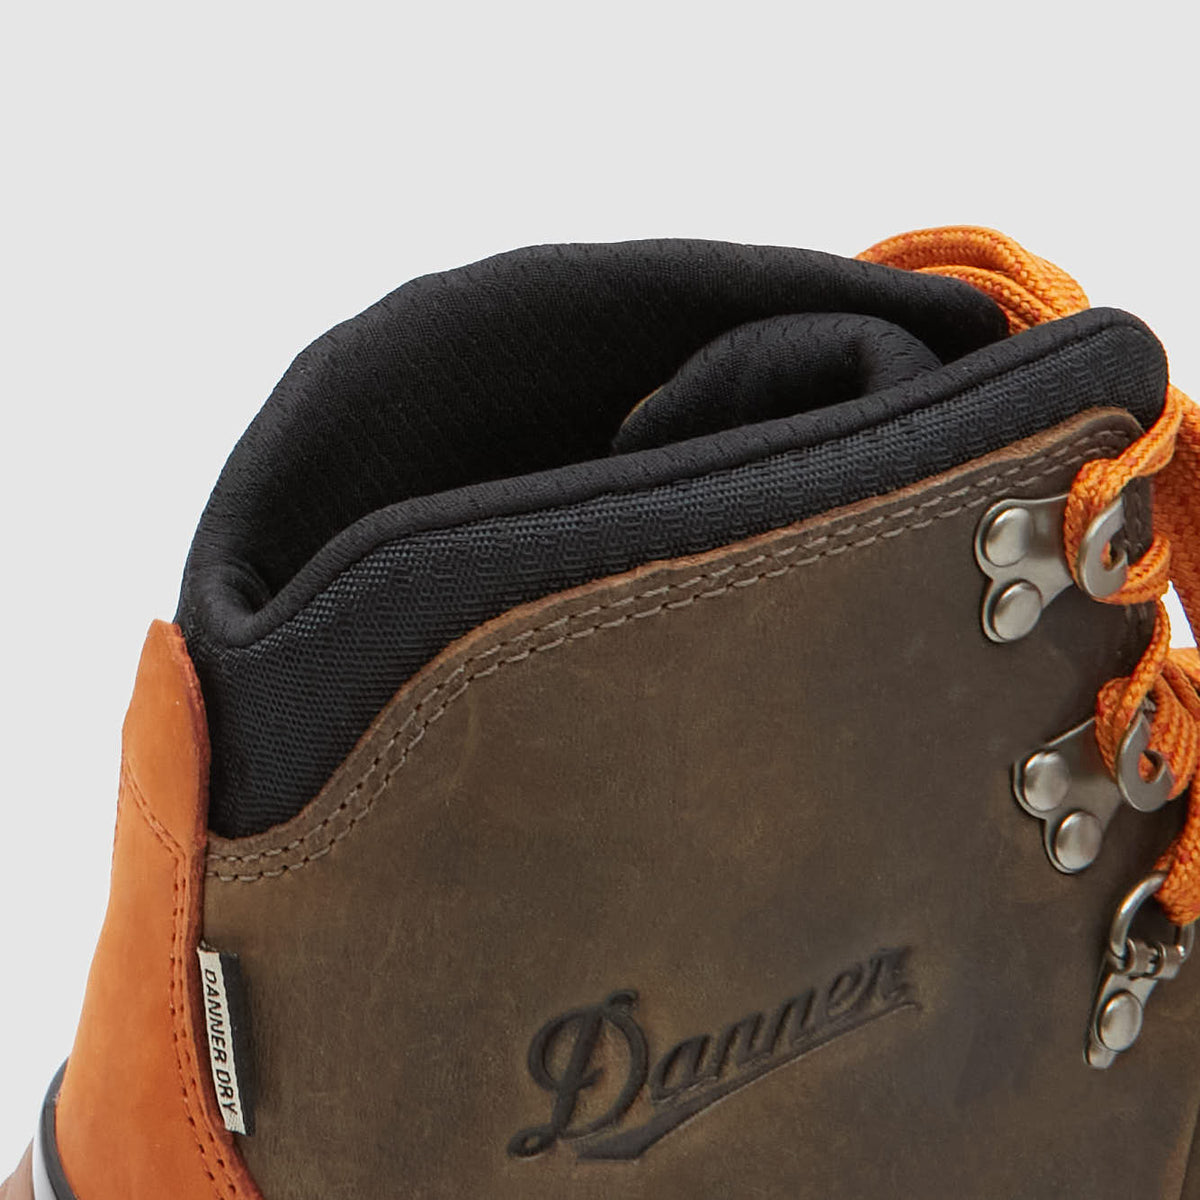 Danner Boots lightweight Mountain